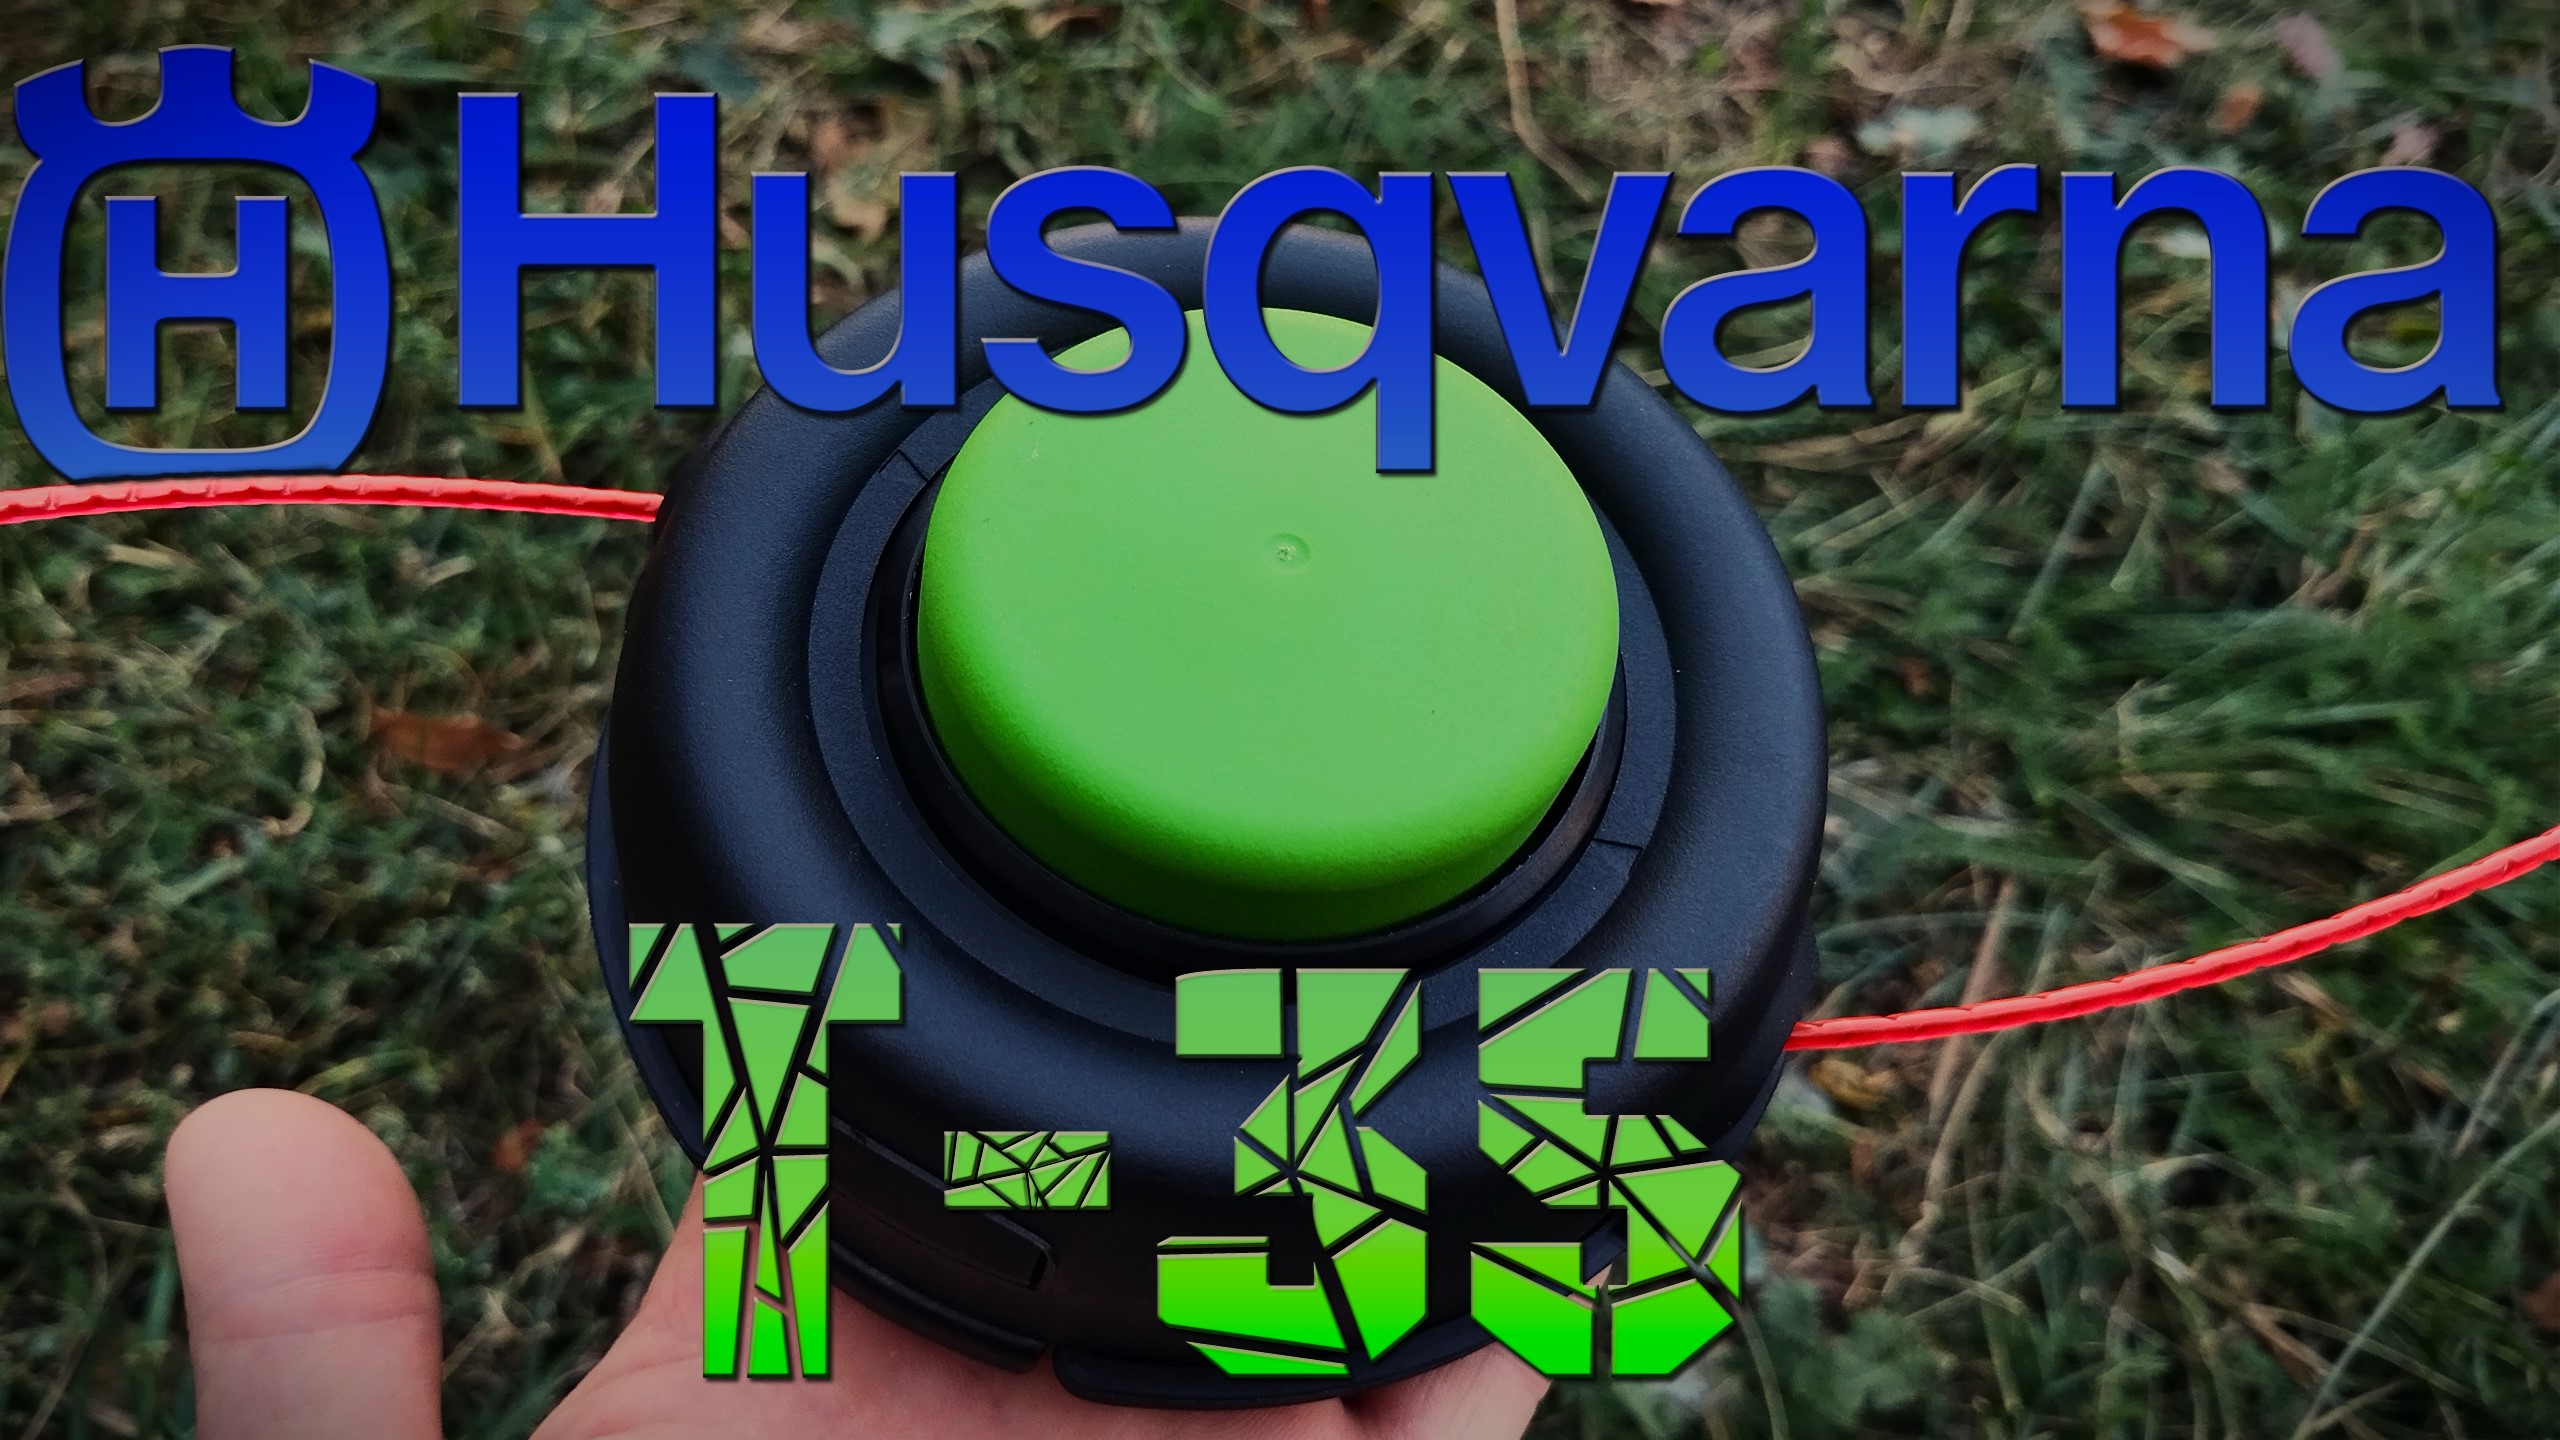 Аналог на катушку Husqvarna T35 M12L. Головка триммерная TUSCAR TH05-13 Standart!